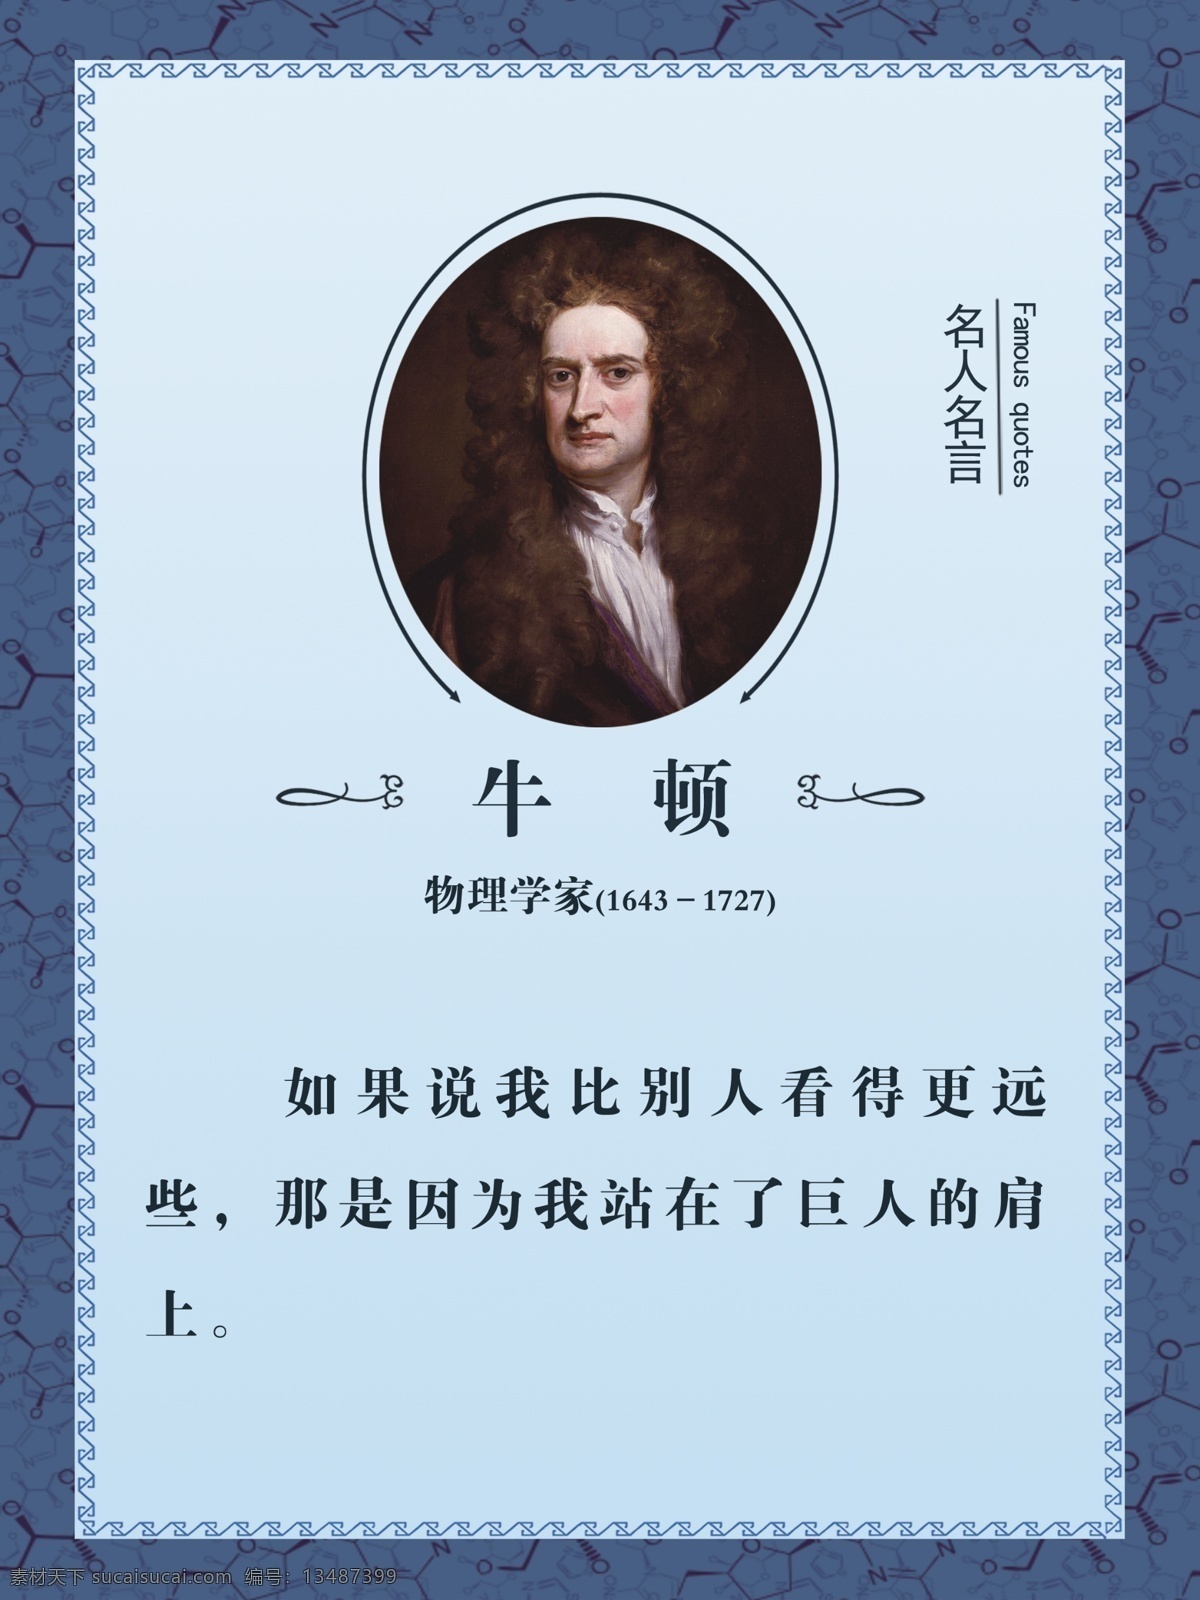 牛顿 历史人物 名著 名人名言 历史故事 相框 物理学家 哲学 经典 蓝色背景